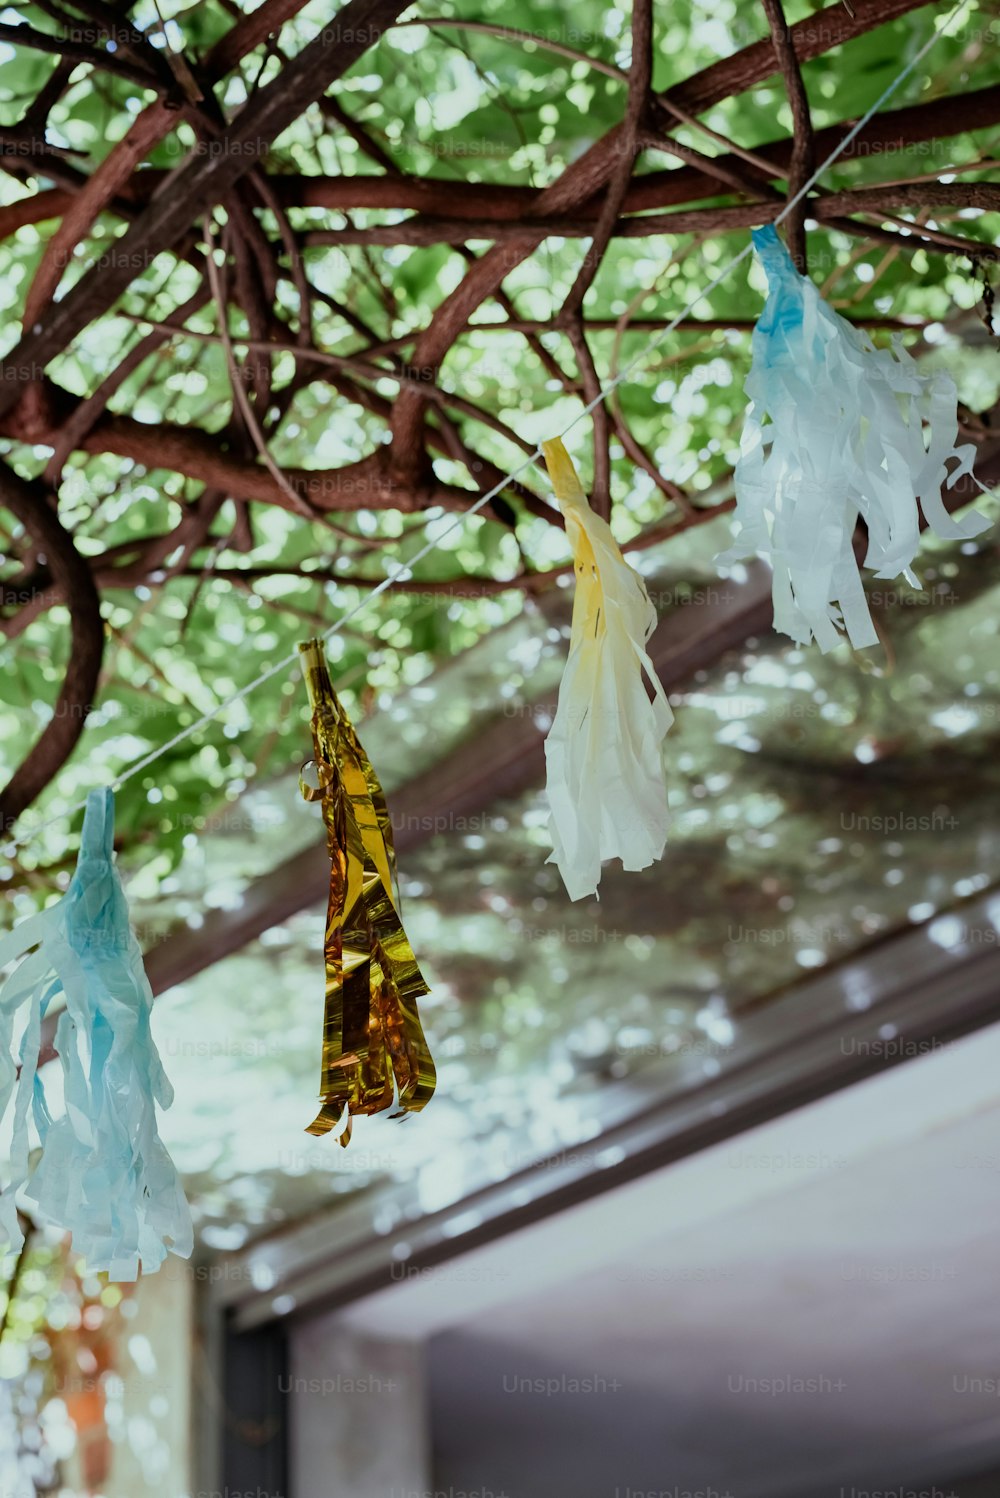 Un groupe de sacs en plastique suspendus à un arbre